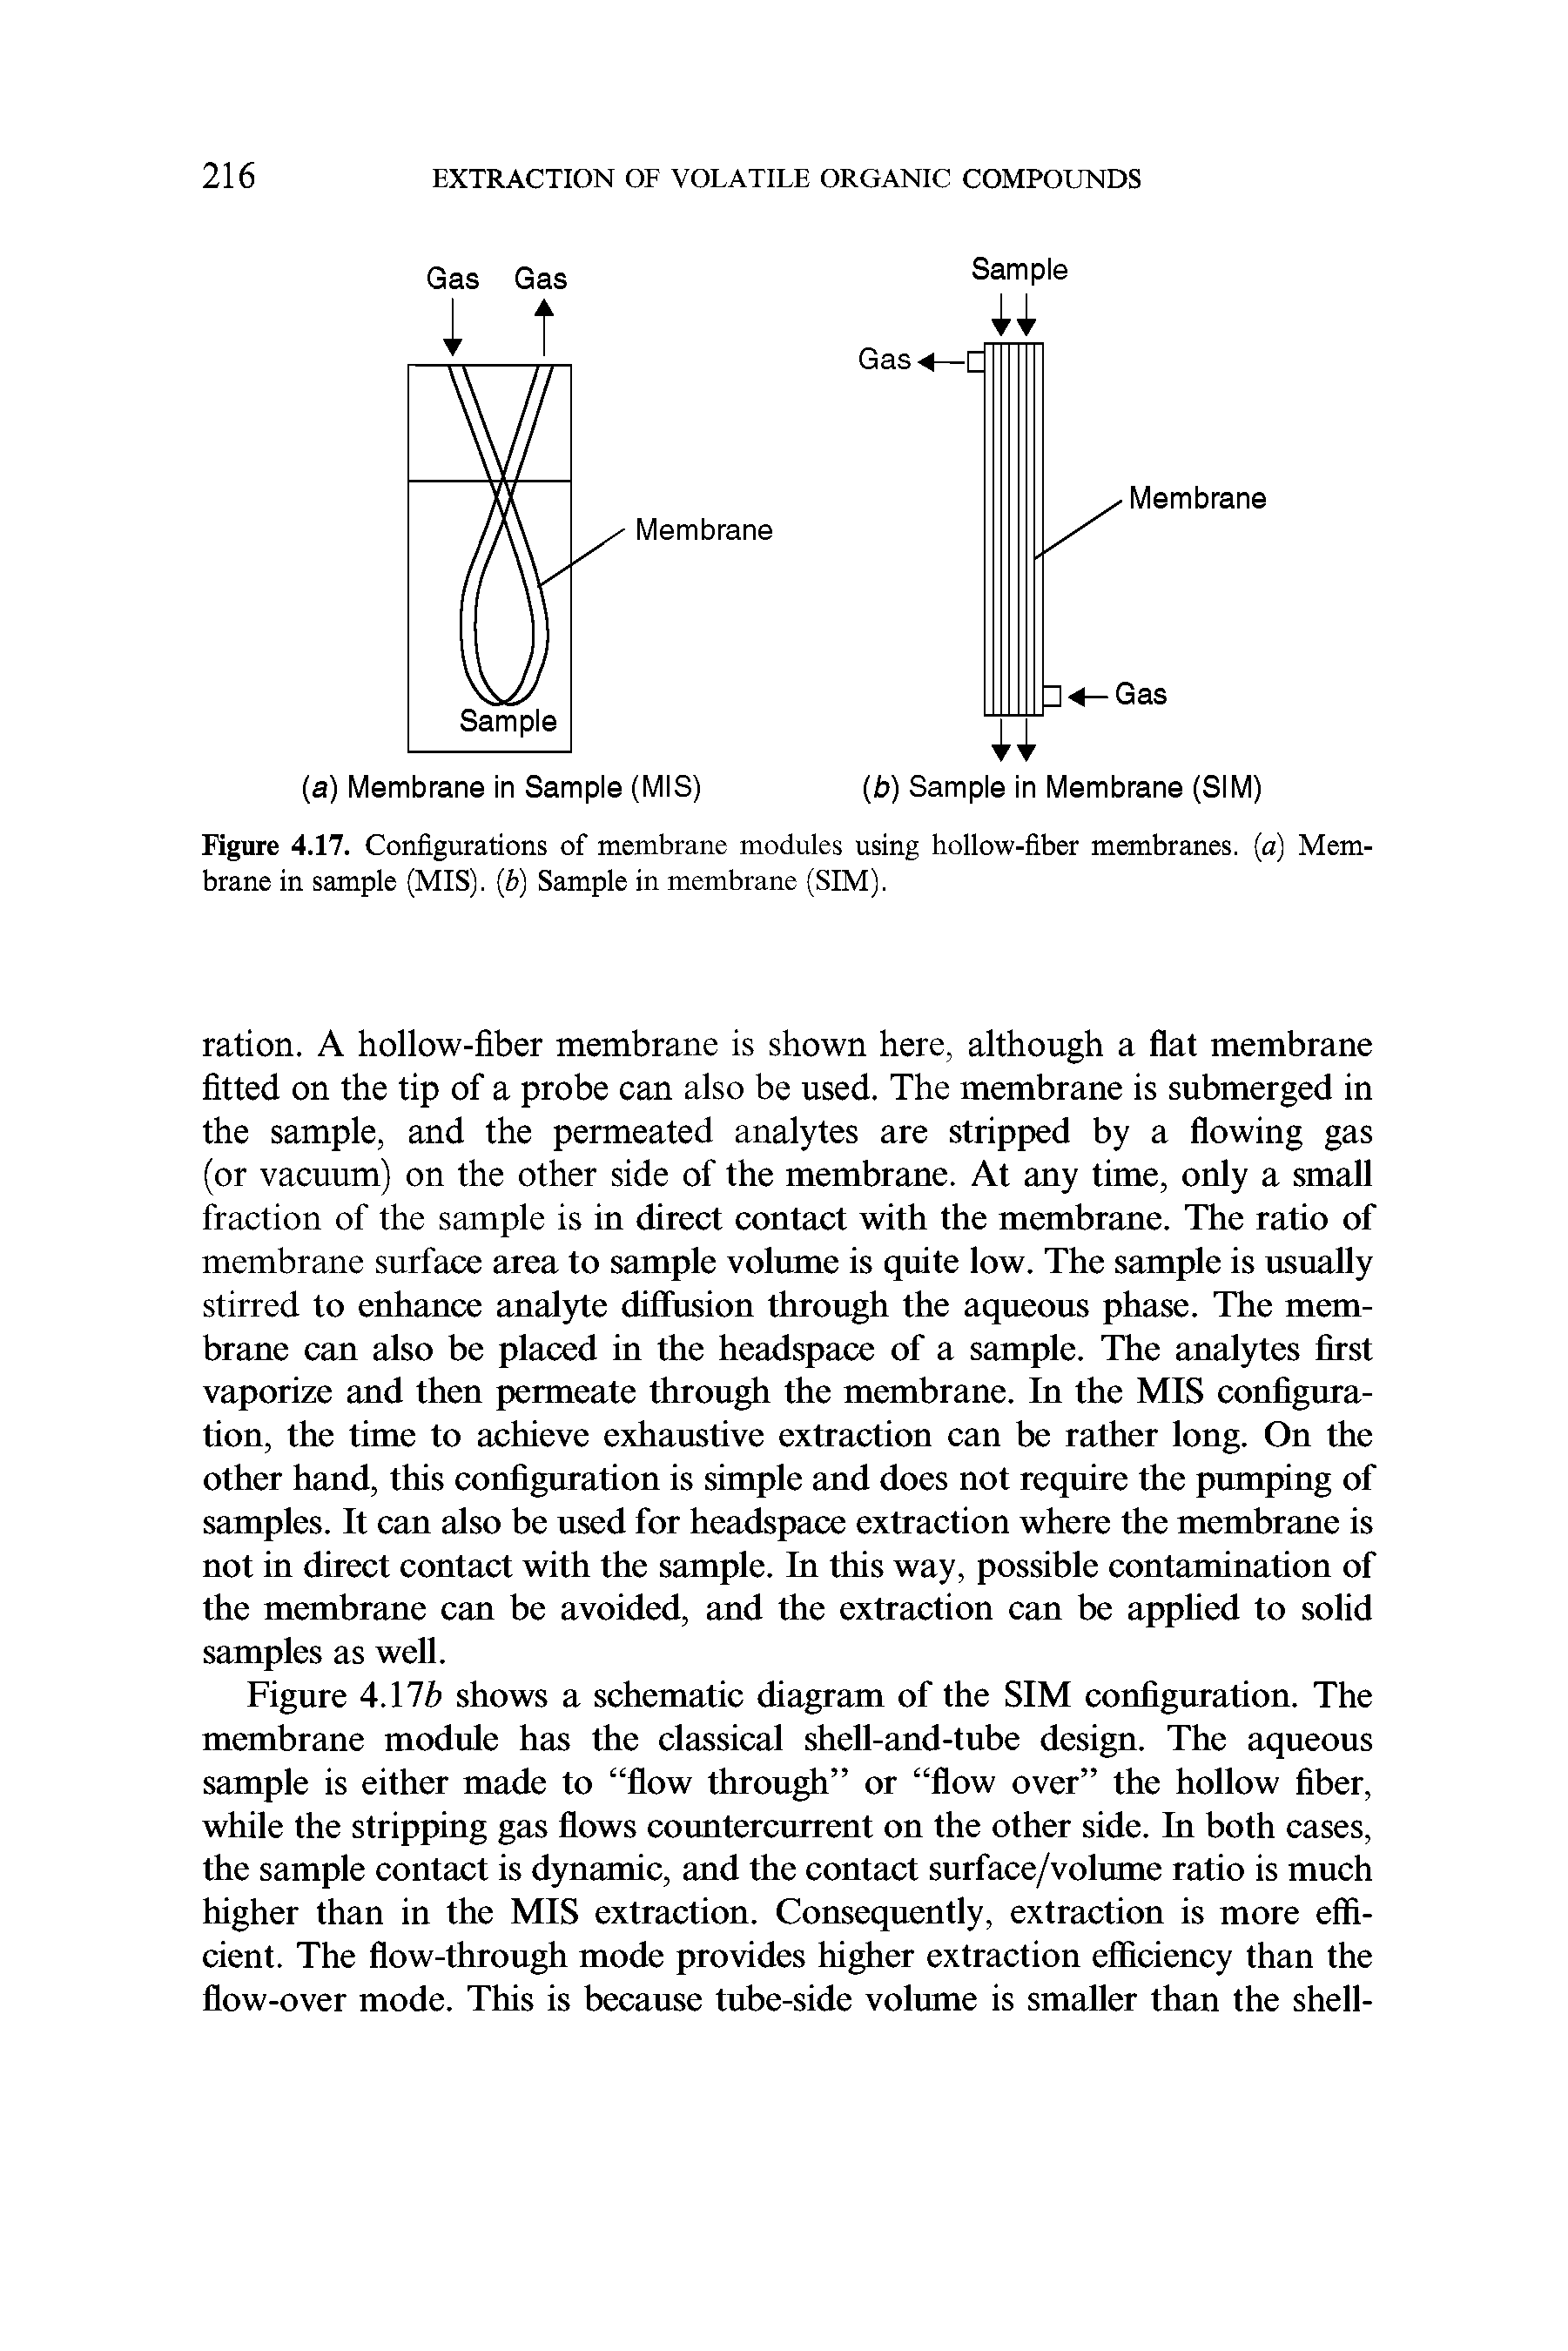 Figure 4.17. Configurations of membrane modules using hollow-fiber membranes, (a) Membrane in sample (MIS). (b) Sample in membrane (SIM).